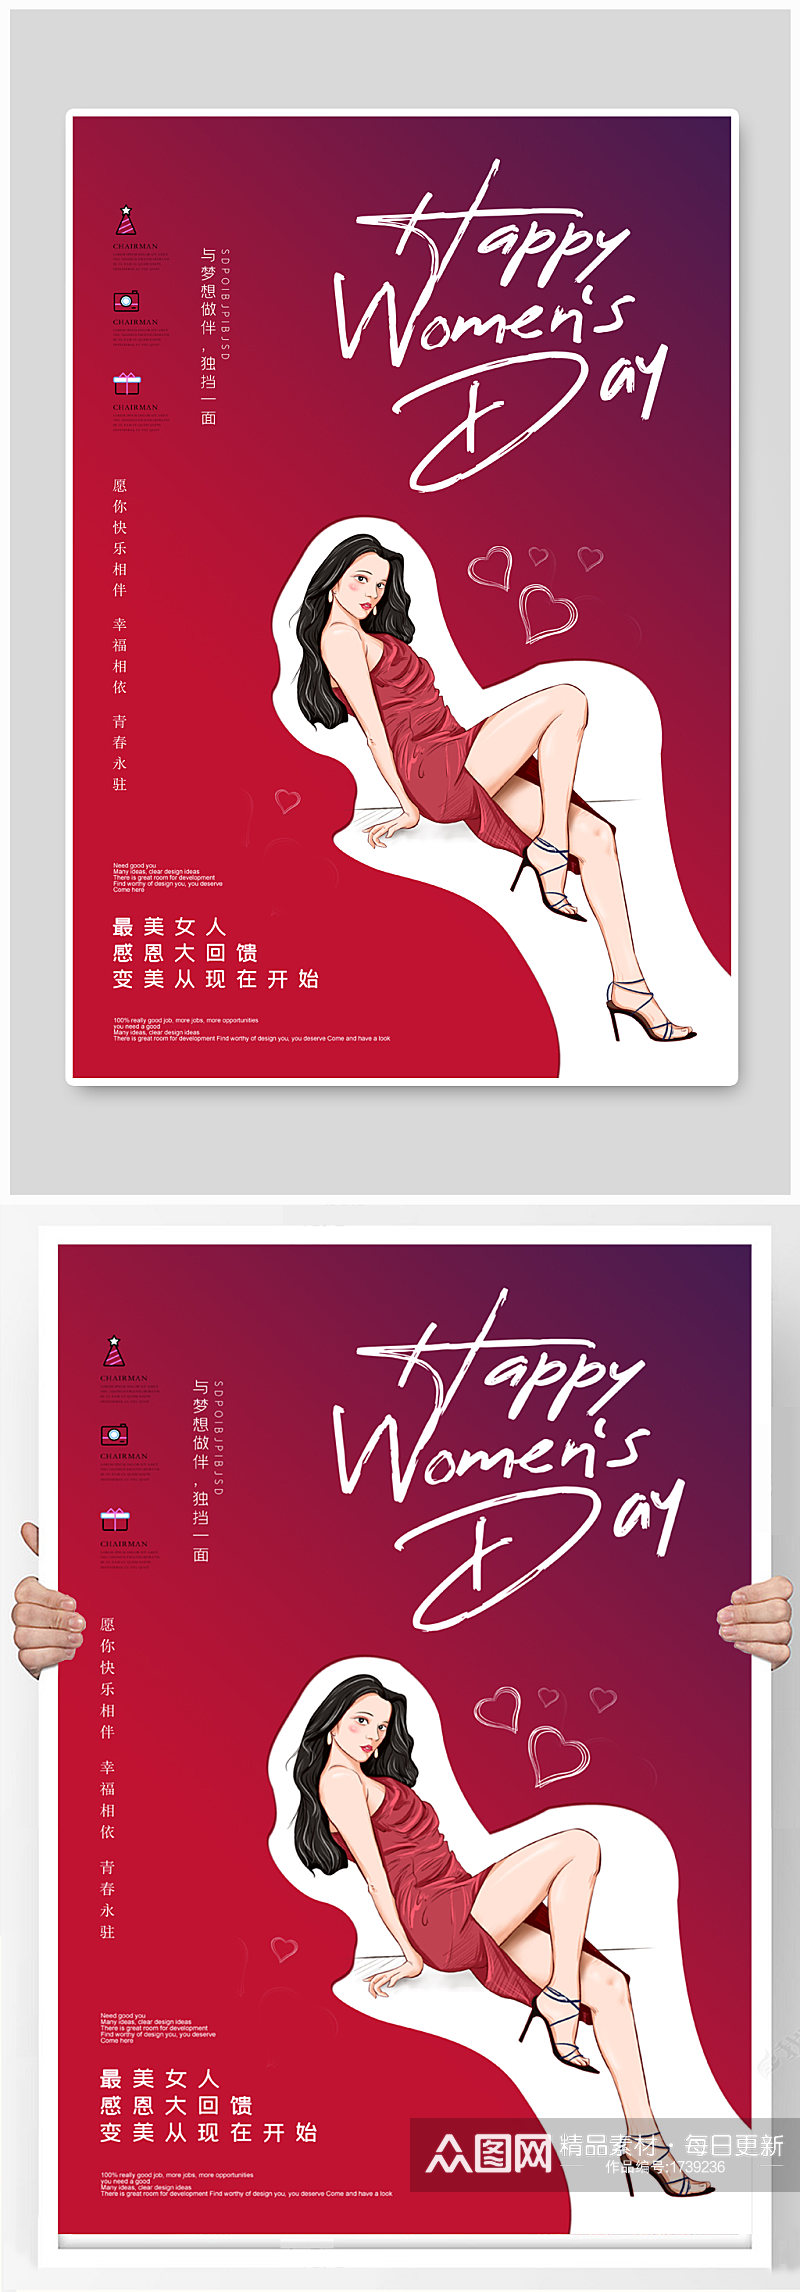 妇女节活动促销红色创意海报素材